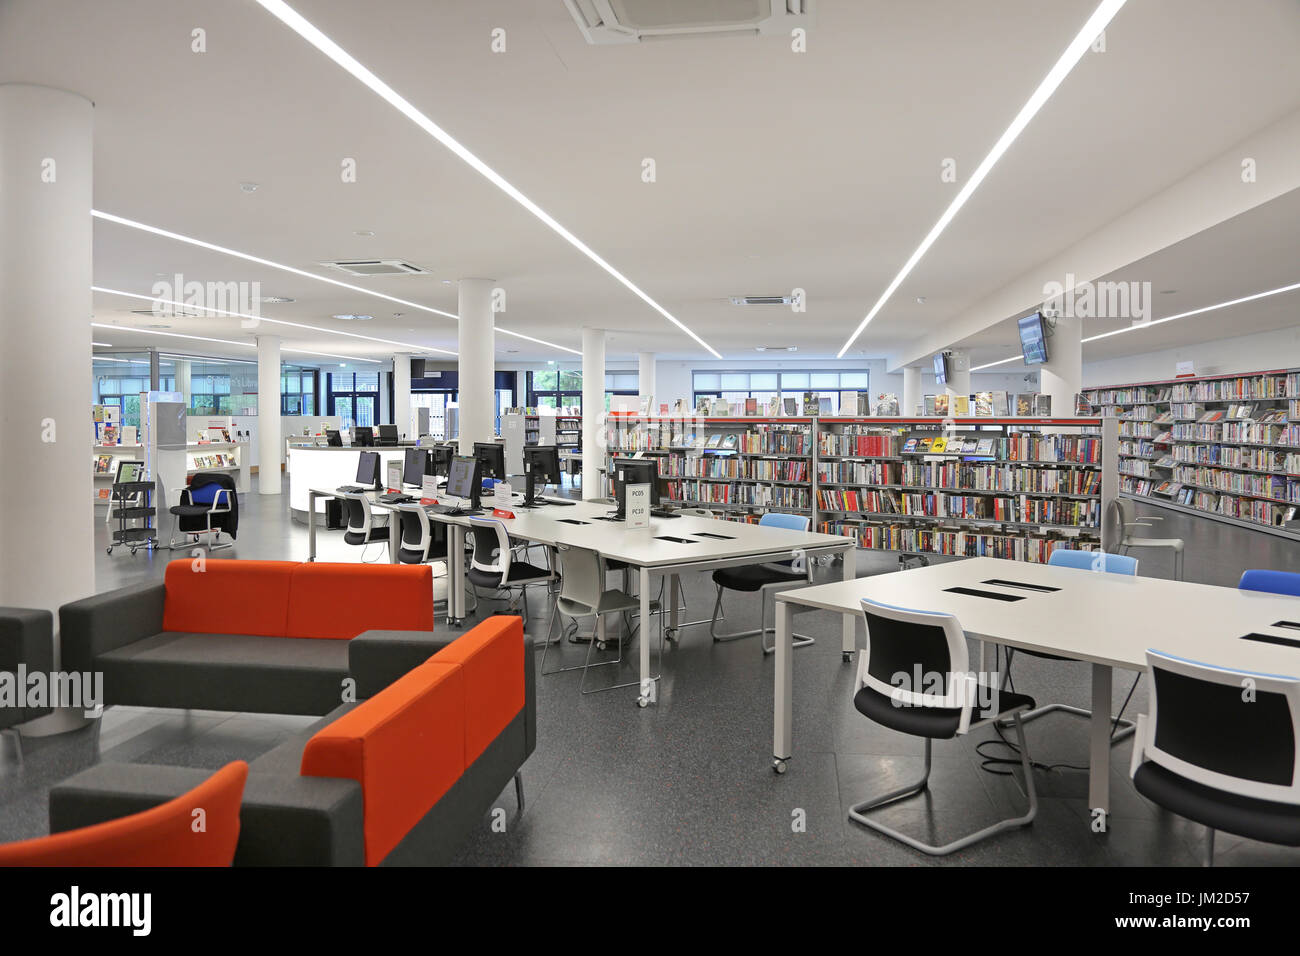 Innenansicht der neu restaurierten Marcus Garvey Bibliothek in London Borough of Haringey, Vereinigtes Königreich. Zeigt traditionelle Bücherregale und neue Computer-Terminals. Stockfoto